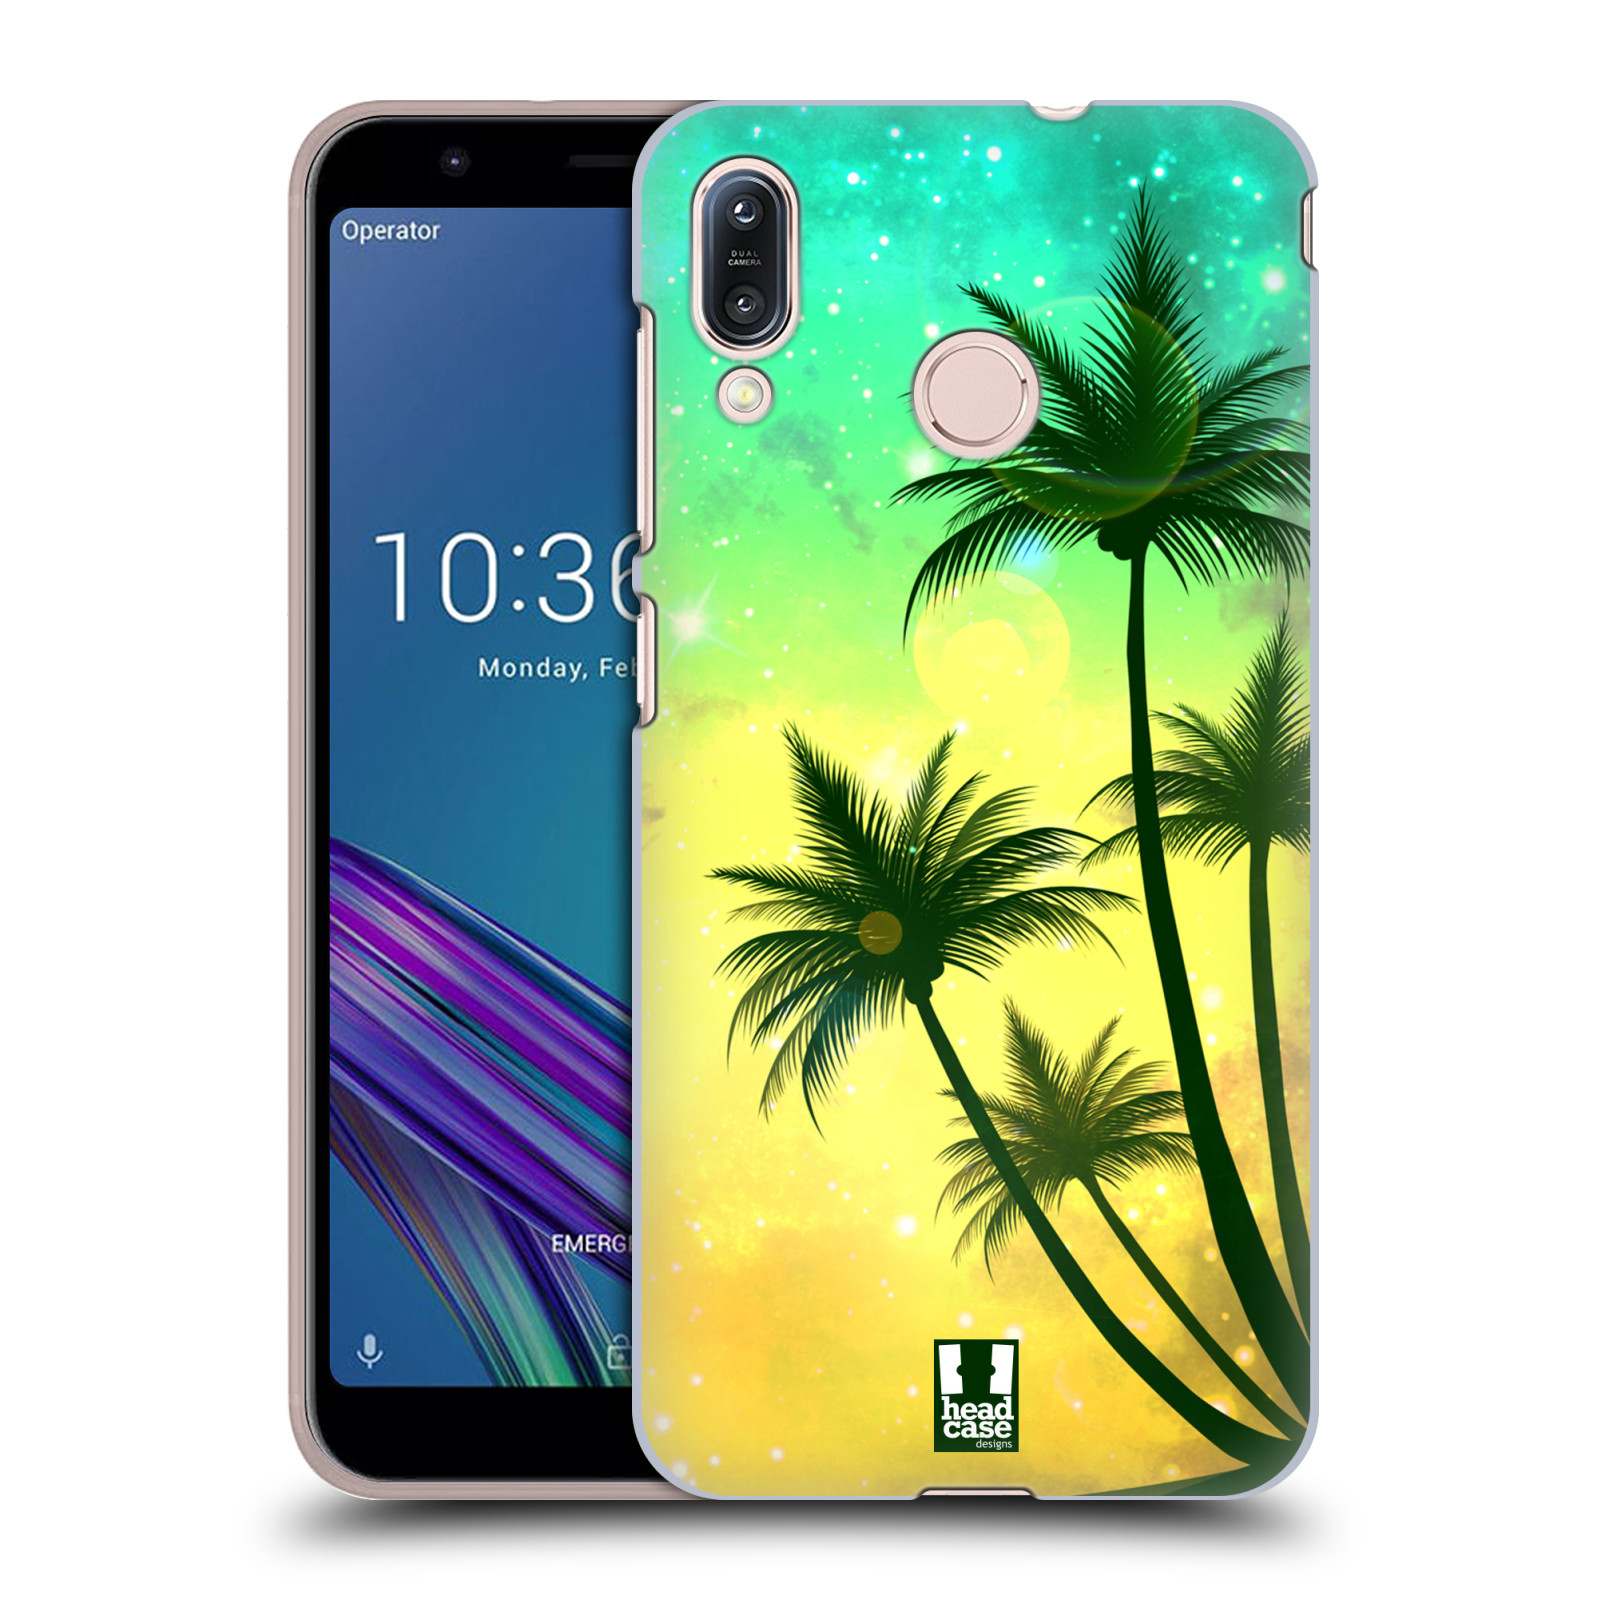 Pouzdro na mobil Asus Zenfone Max M1 (ZB555KL) - HEAD CASE - vzor Kreslený motiv silueta moře a palmy TYRKYSOVÁ